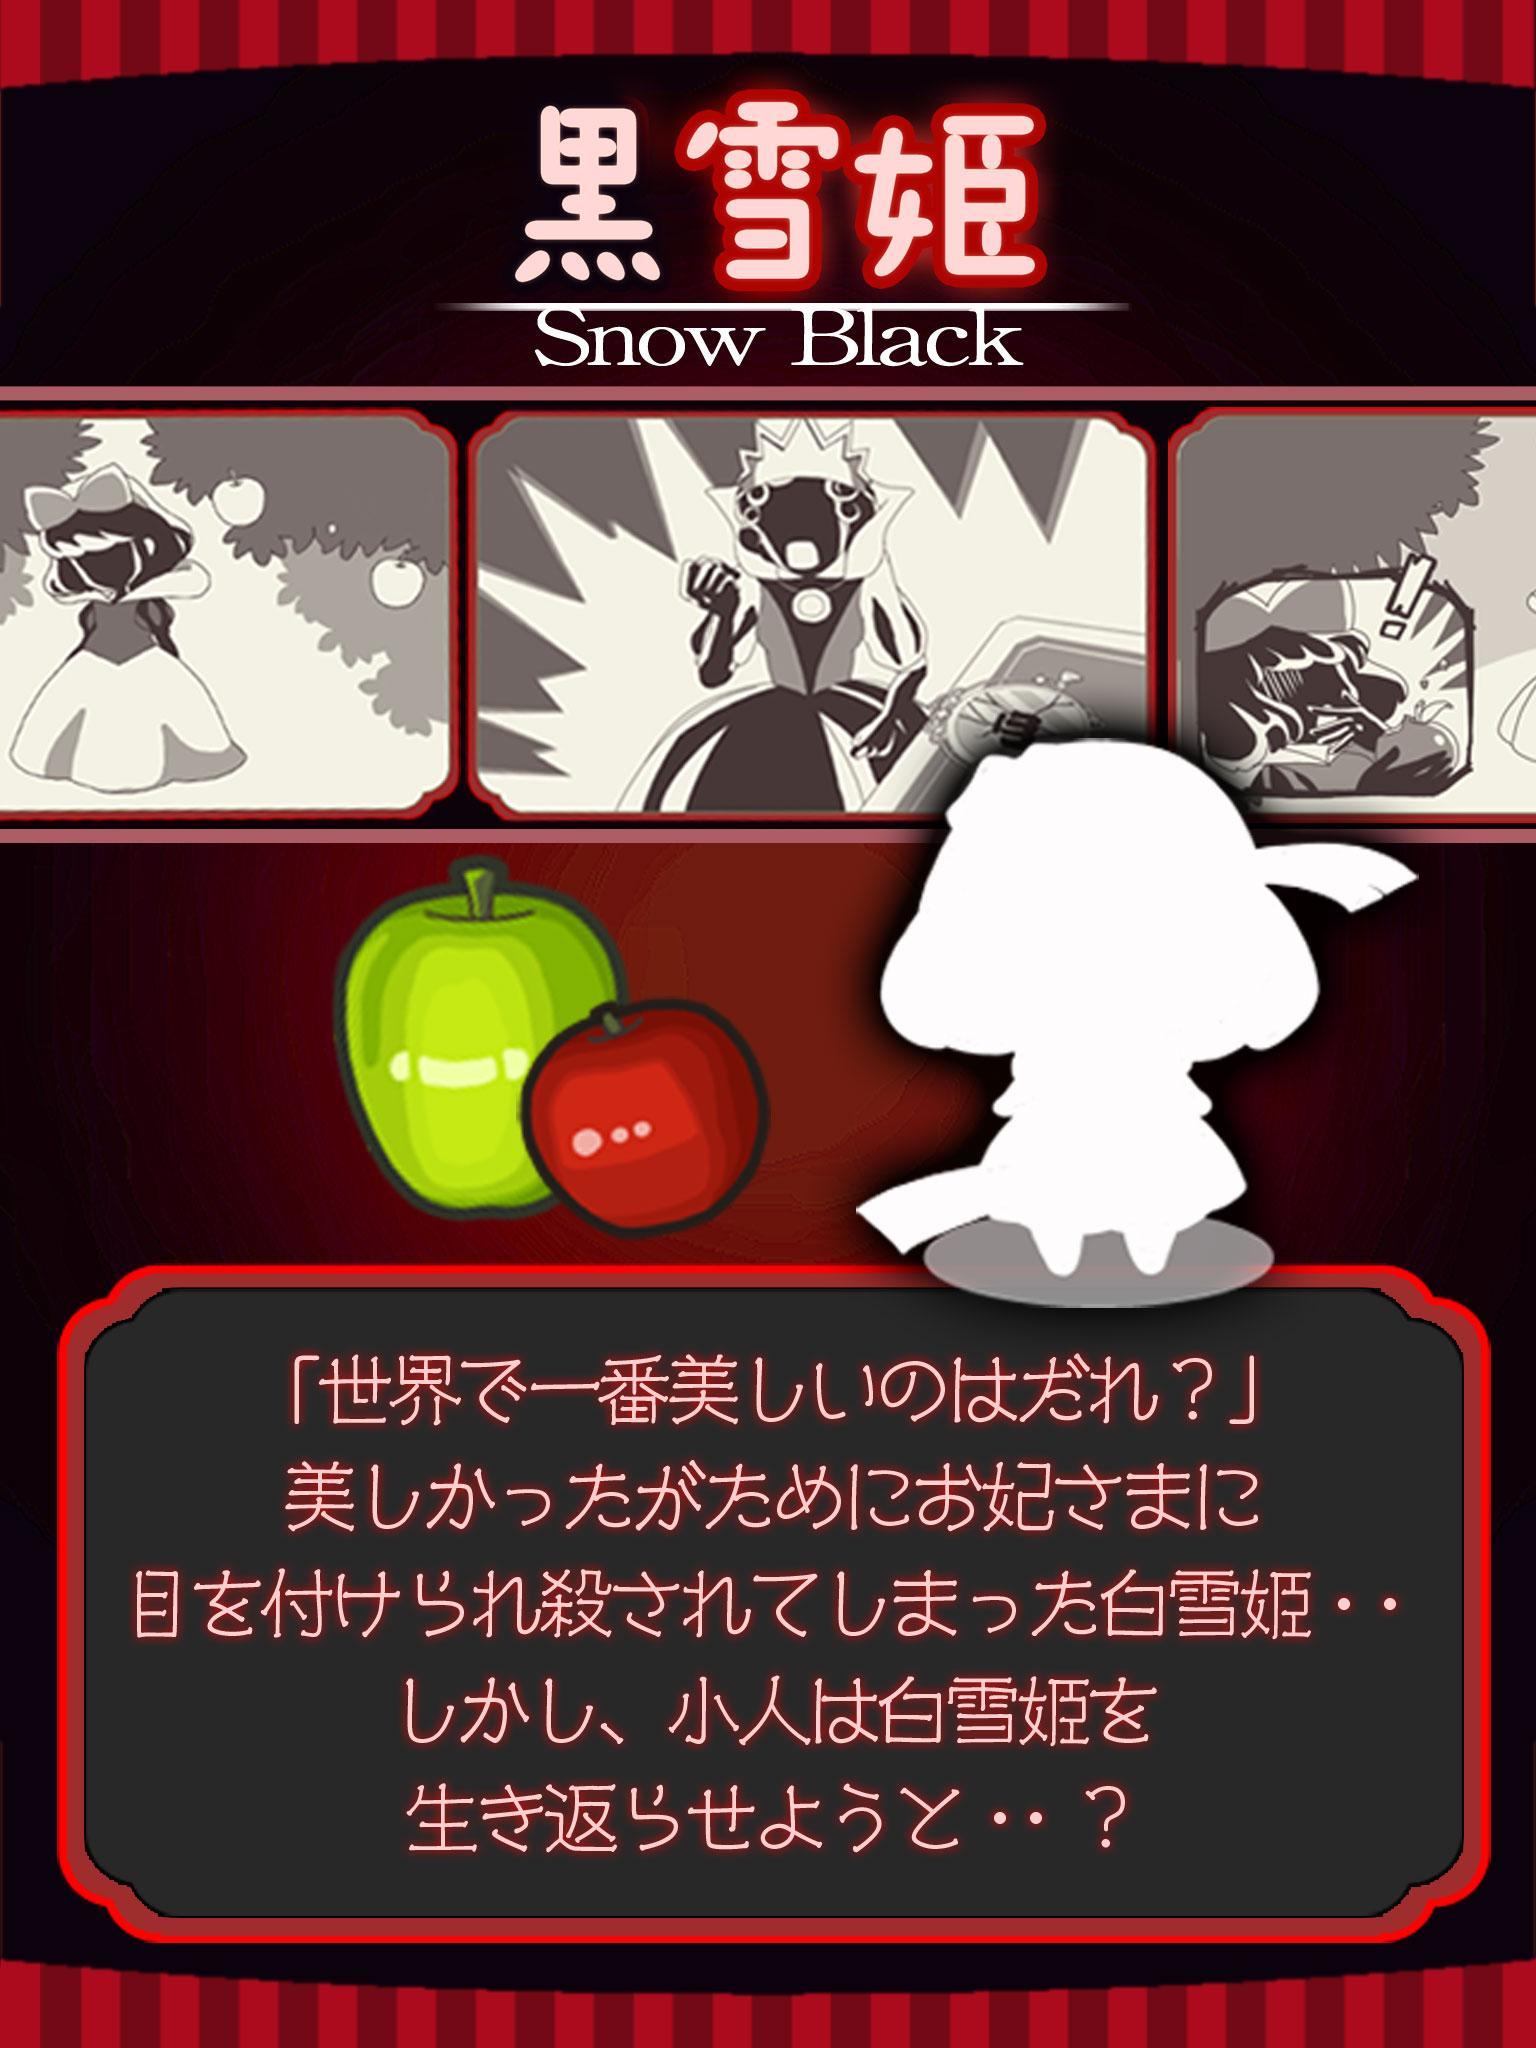 Screenshot 1 of Evolution Black Snow Princess 1.0.2